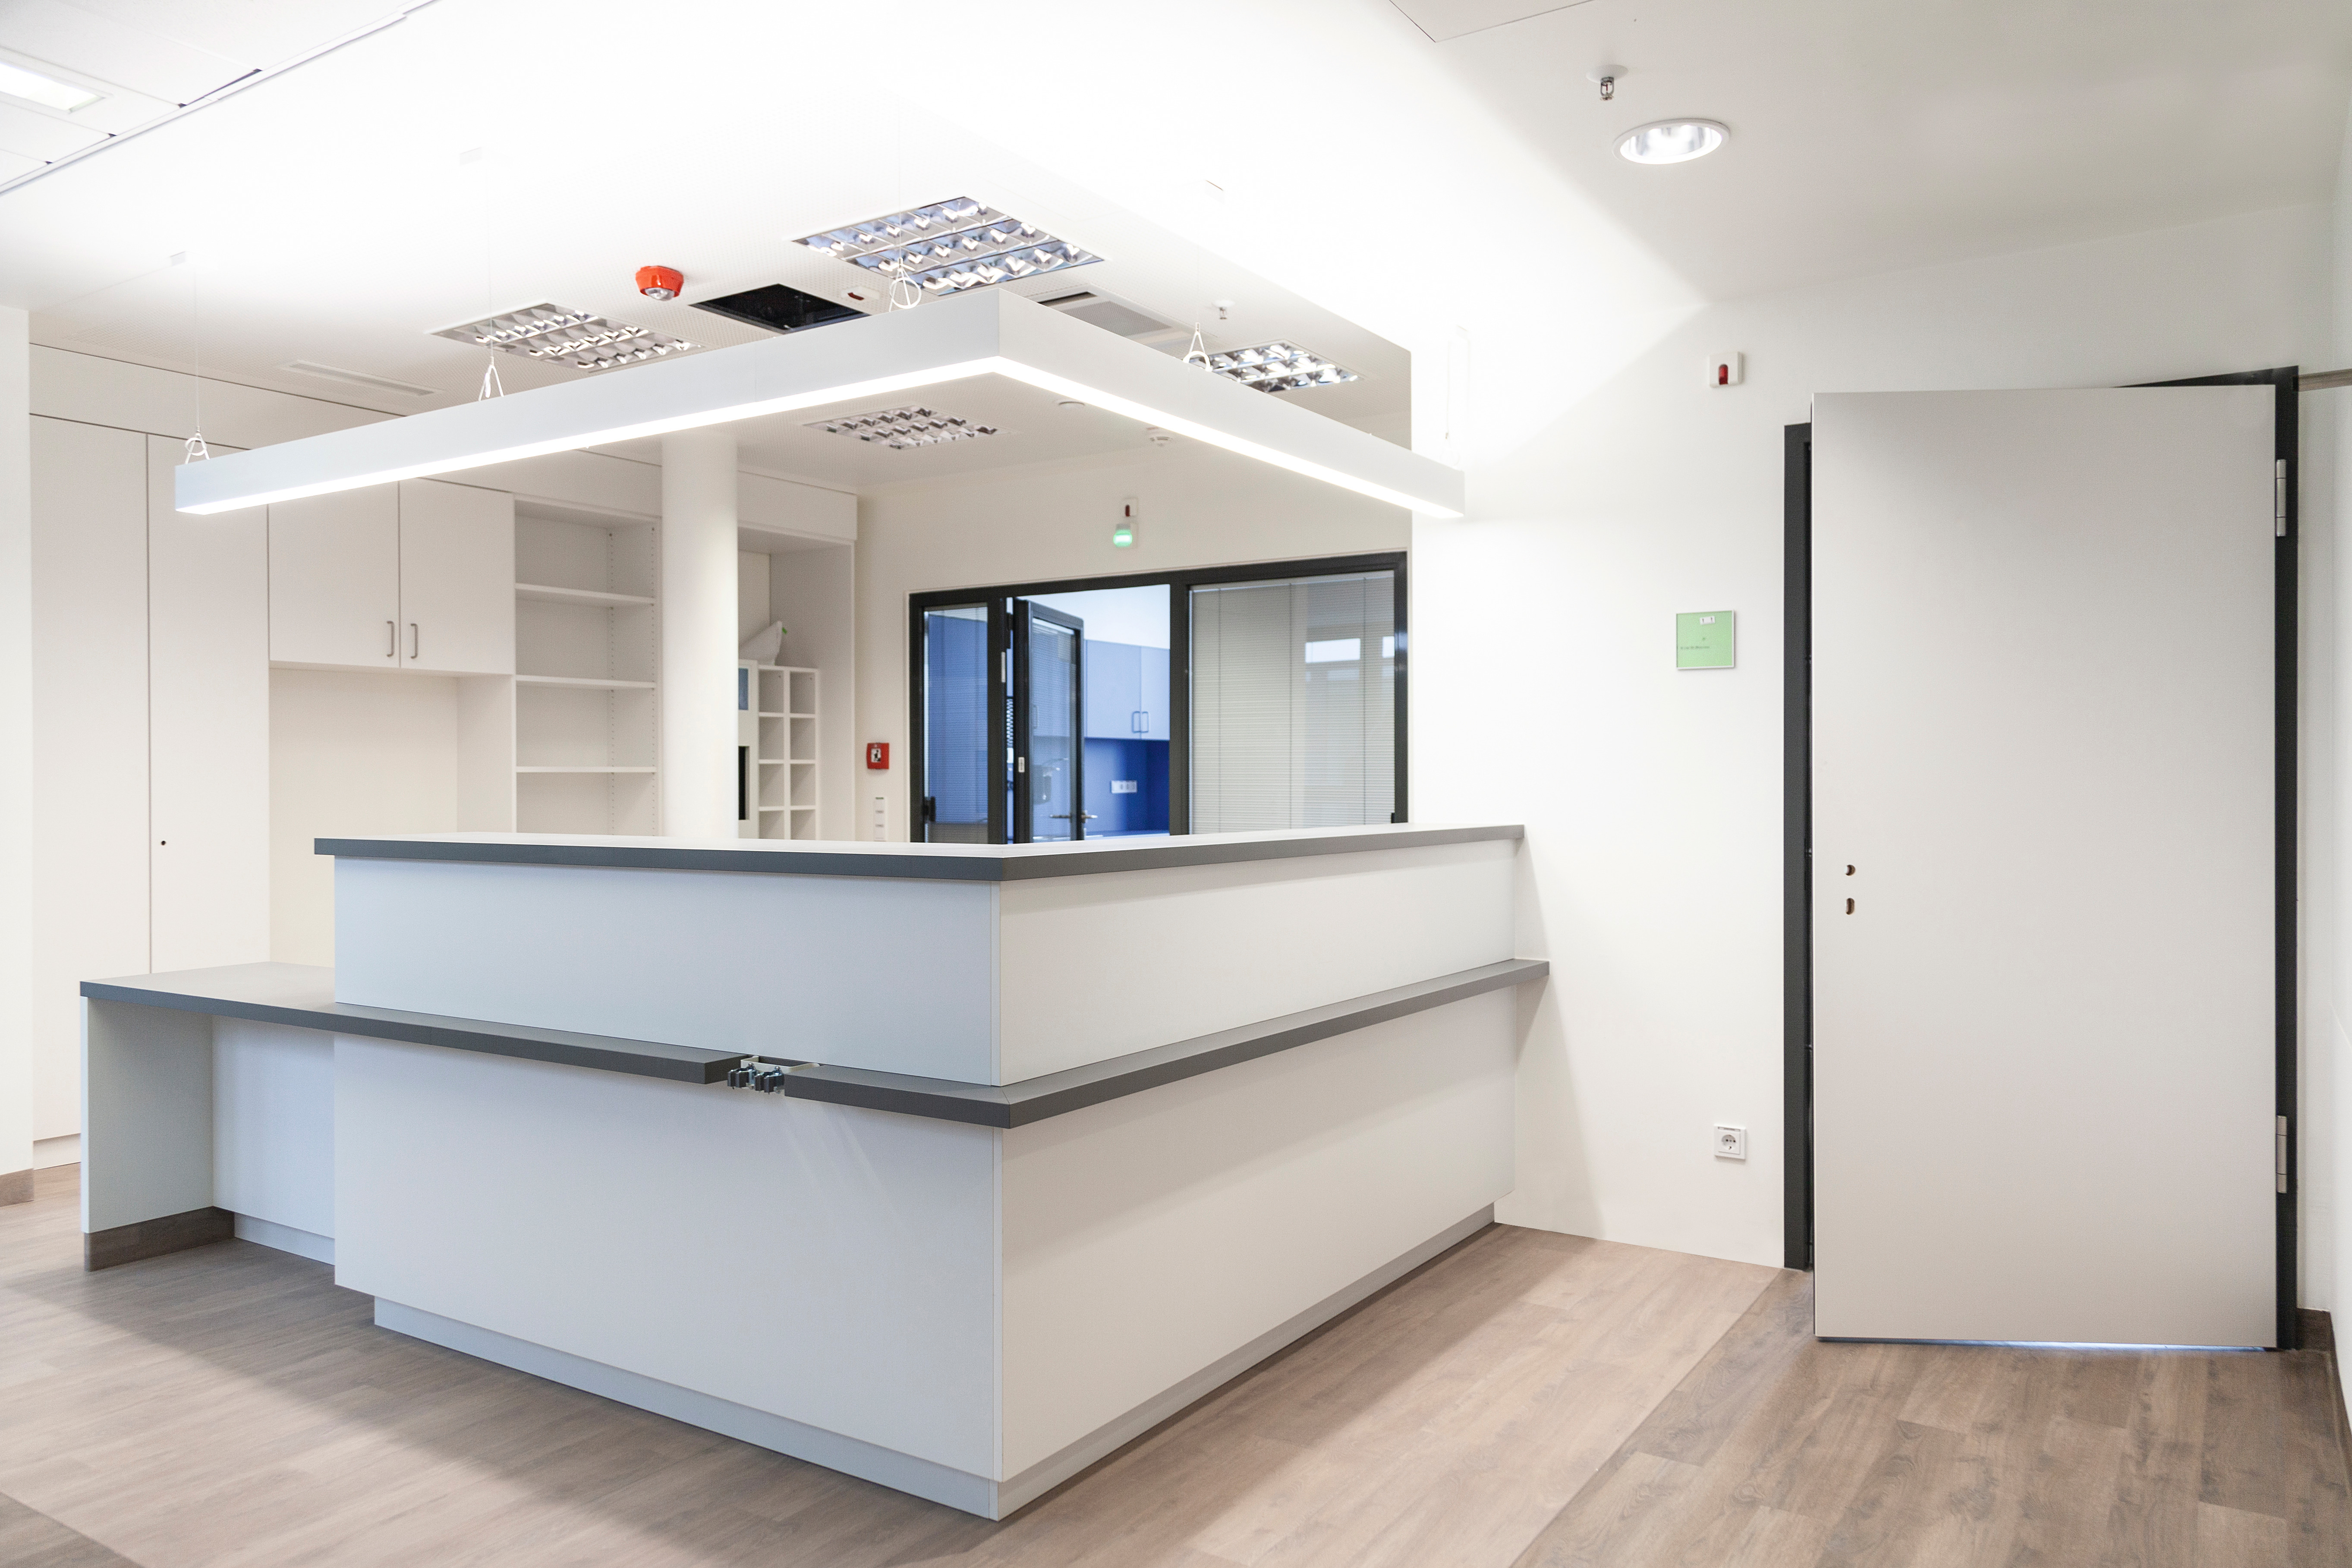 Le comptoir d'accueil est équipé de nouvelles armoires constituées d'éléments de meuble dotés de la technologie Clic. © Reinhard Pichler, Tischlerei Scheschy GmbH